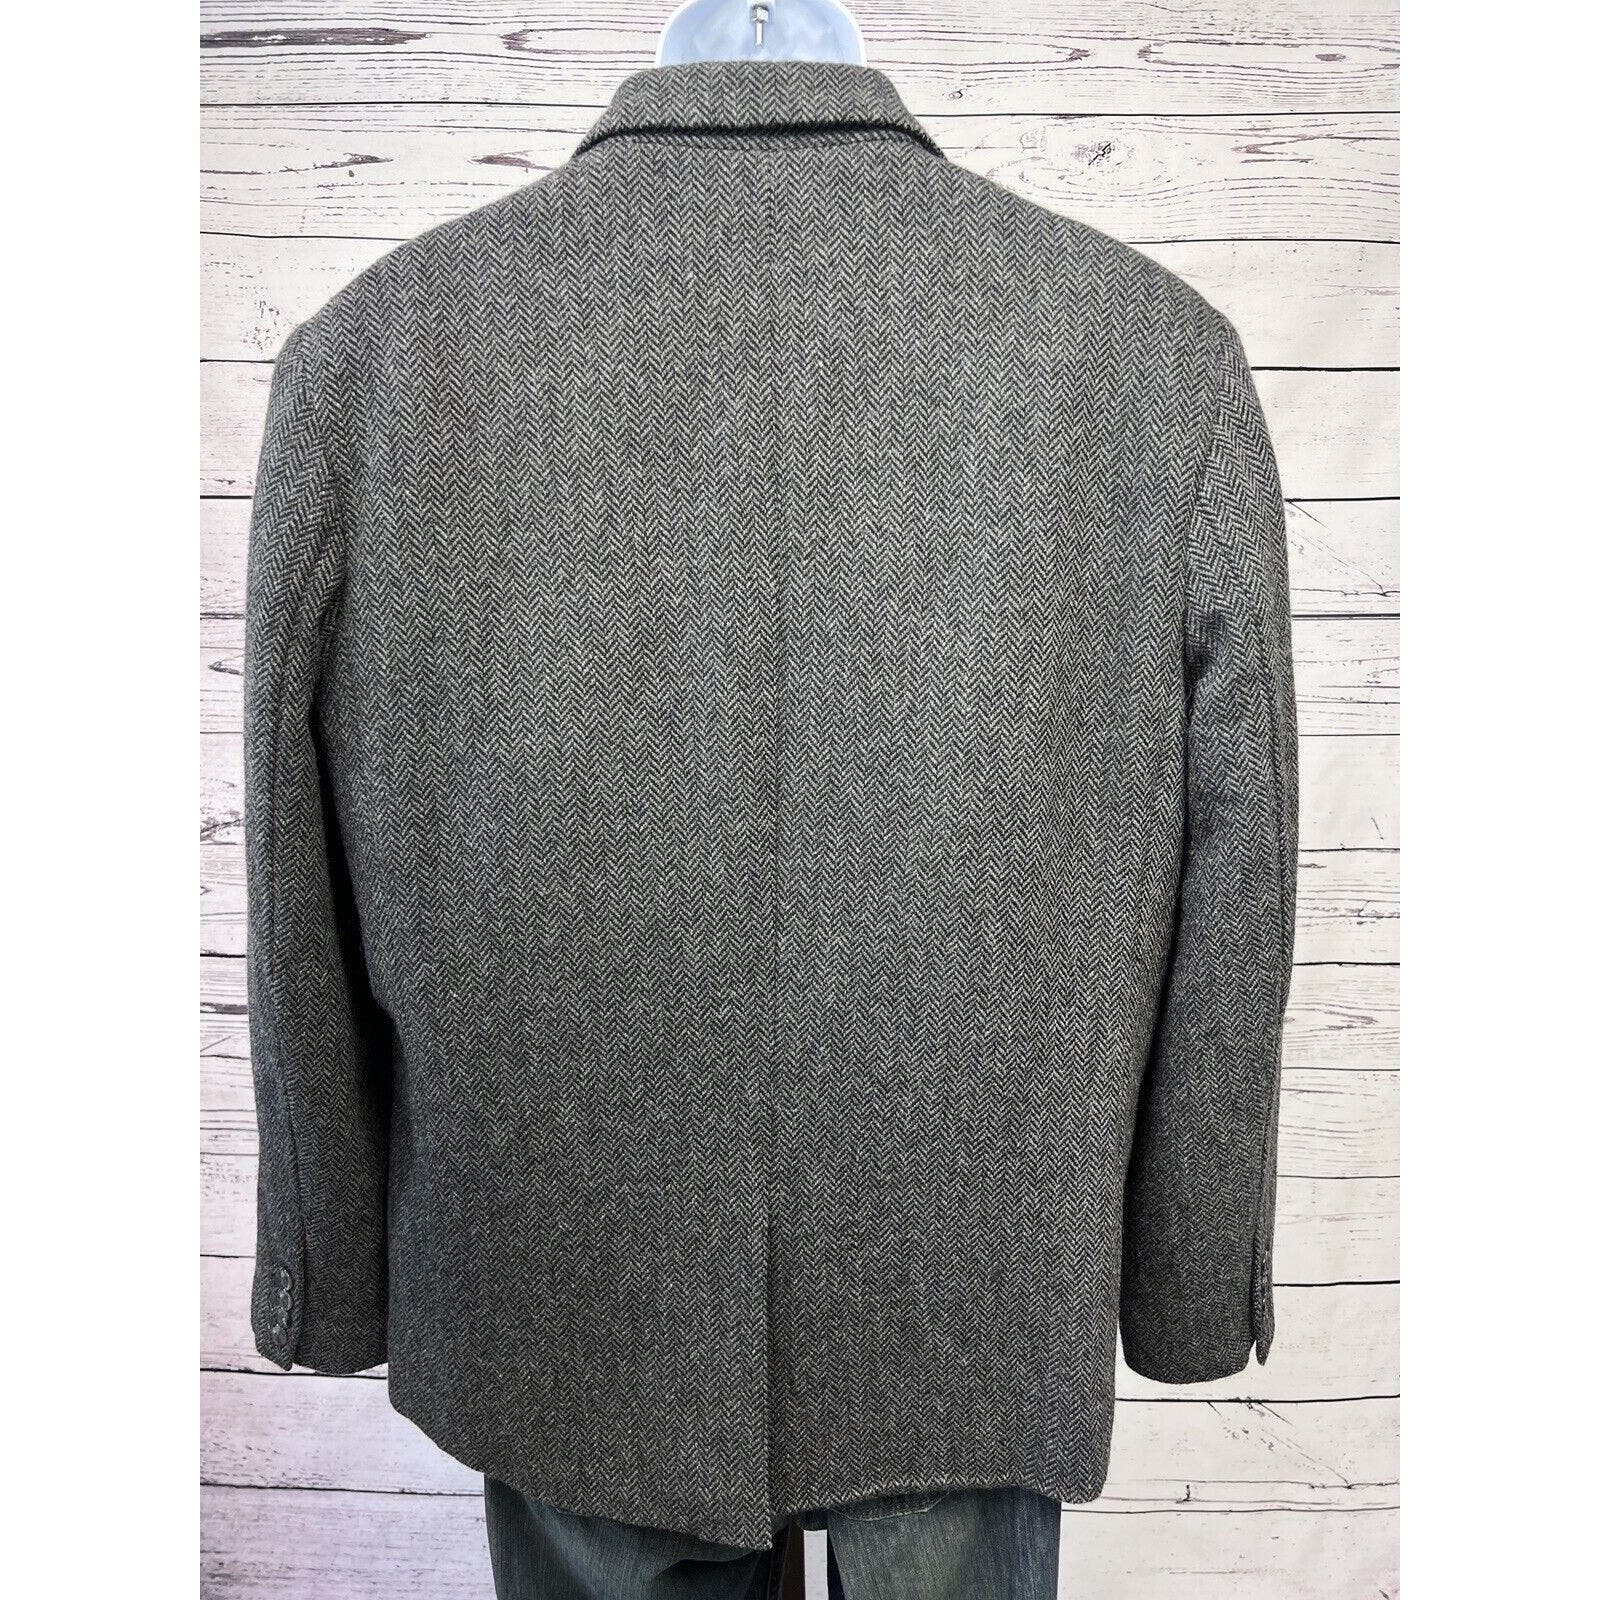 L.L. Bean Tweed Sport Coat Men’s 44S Primaloft Shetland Wool Herringbone Gray